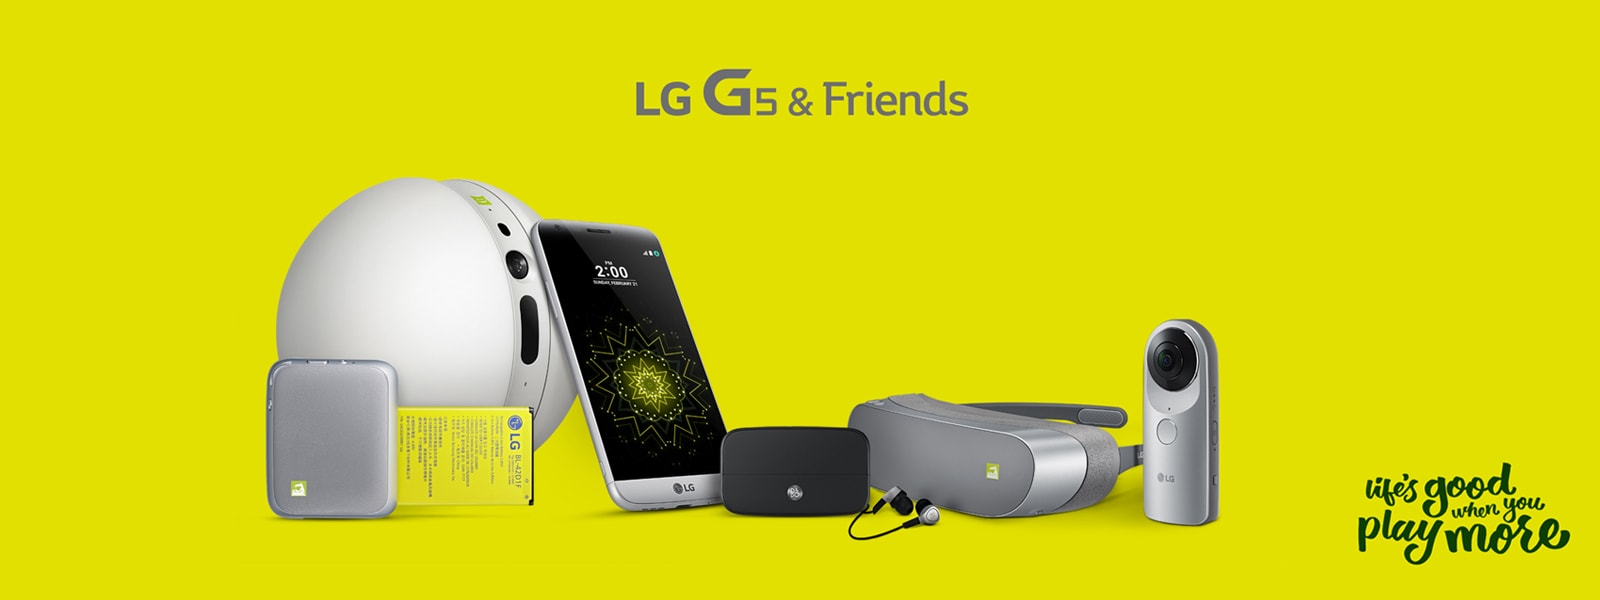 Descubre el móvil LG G5 